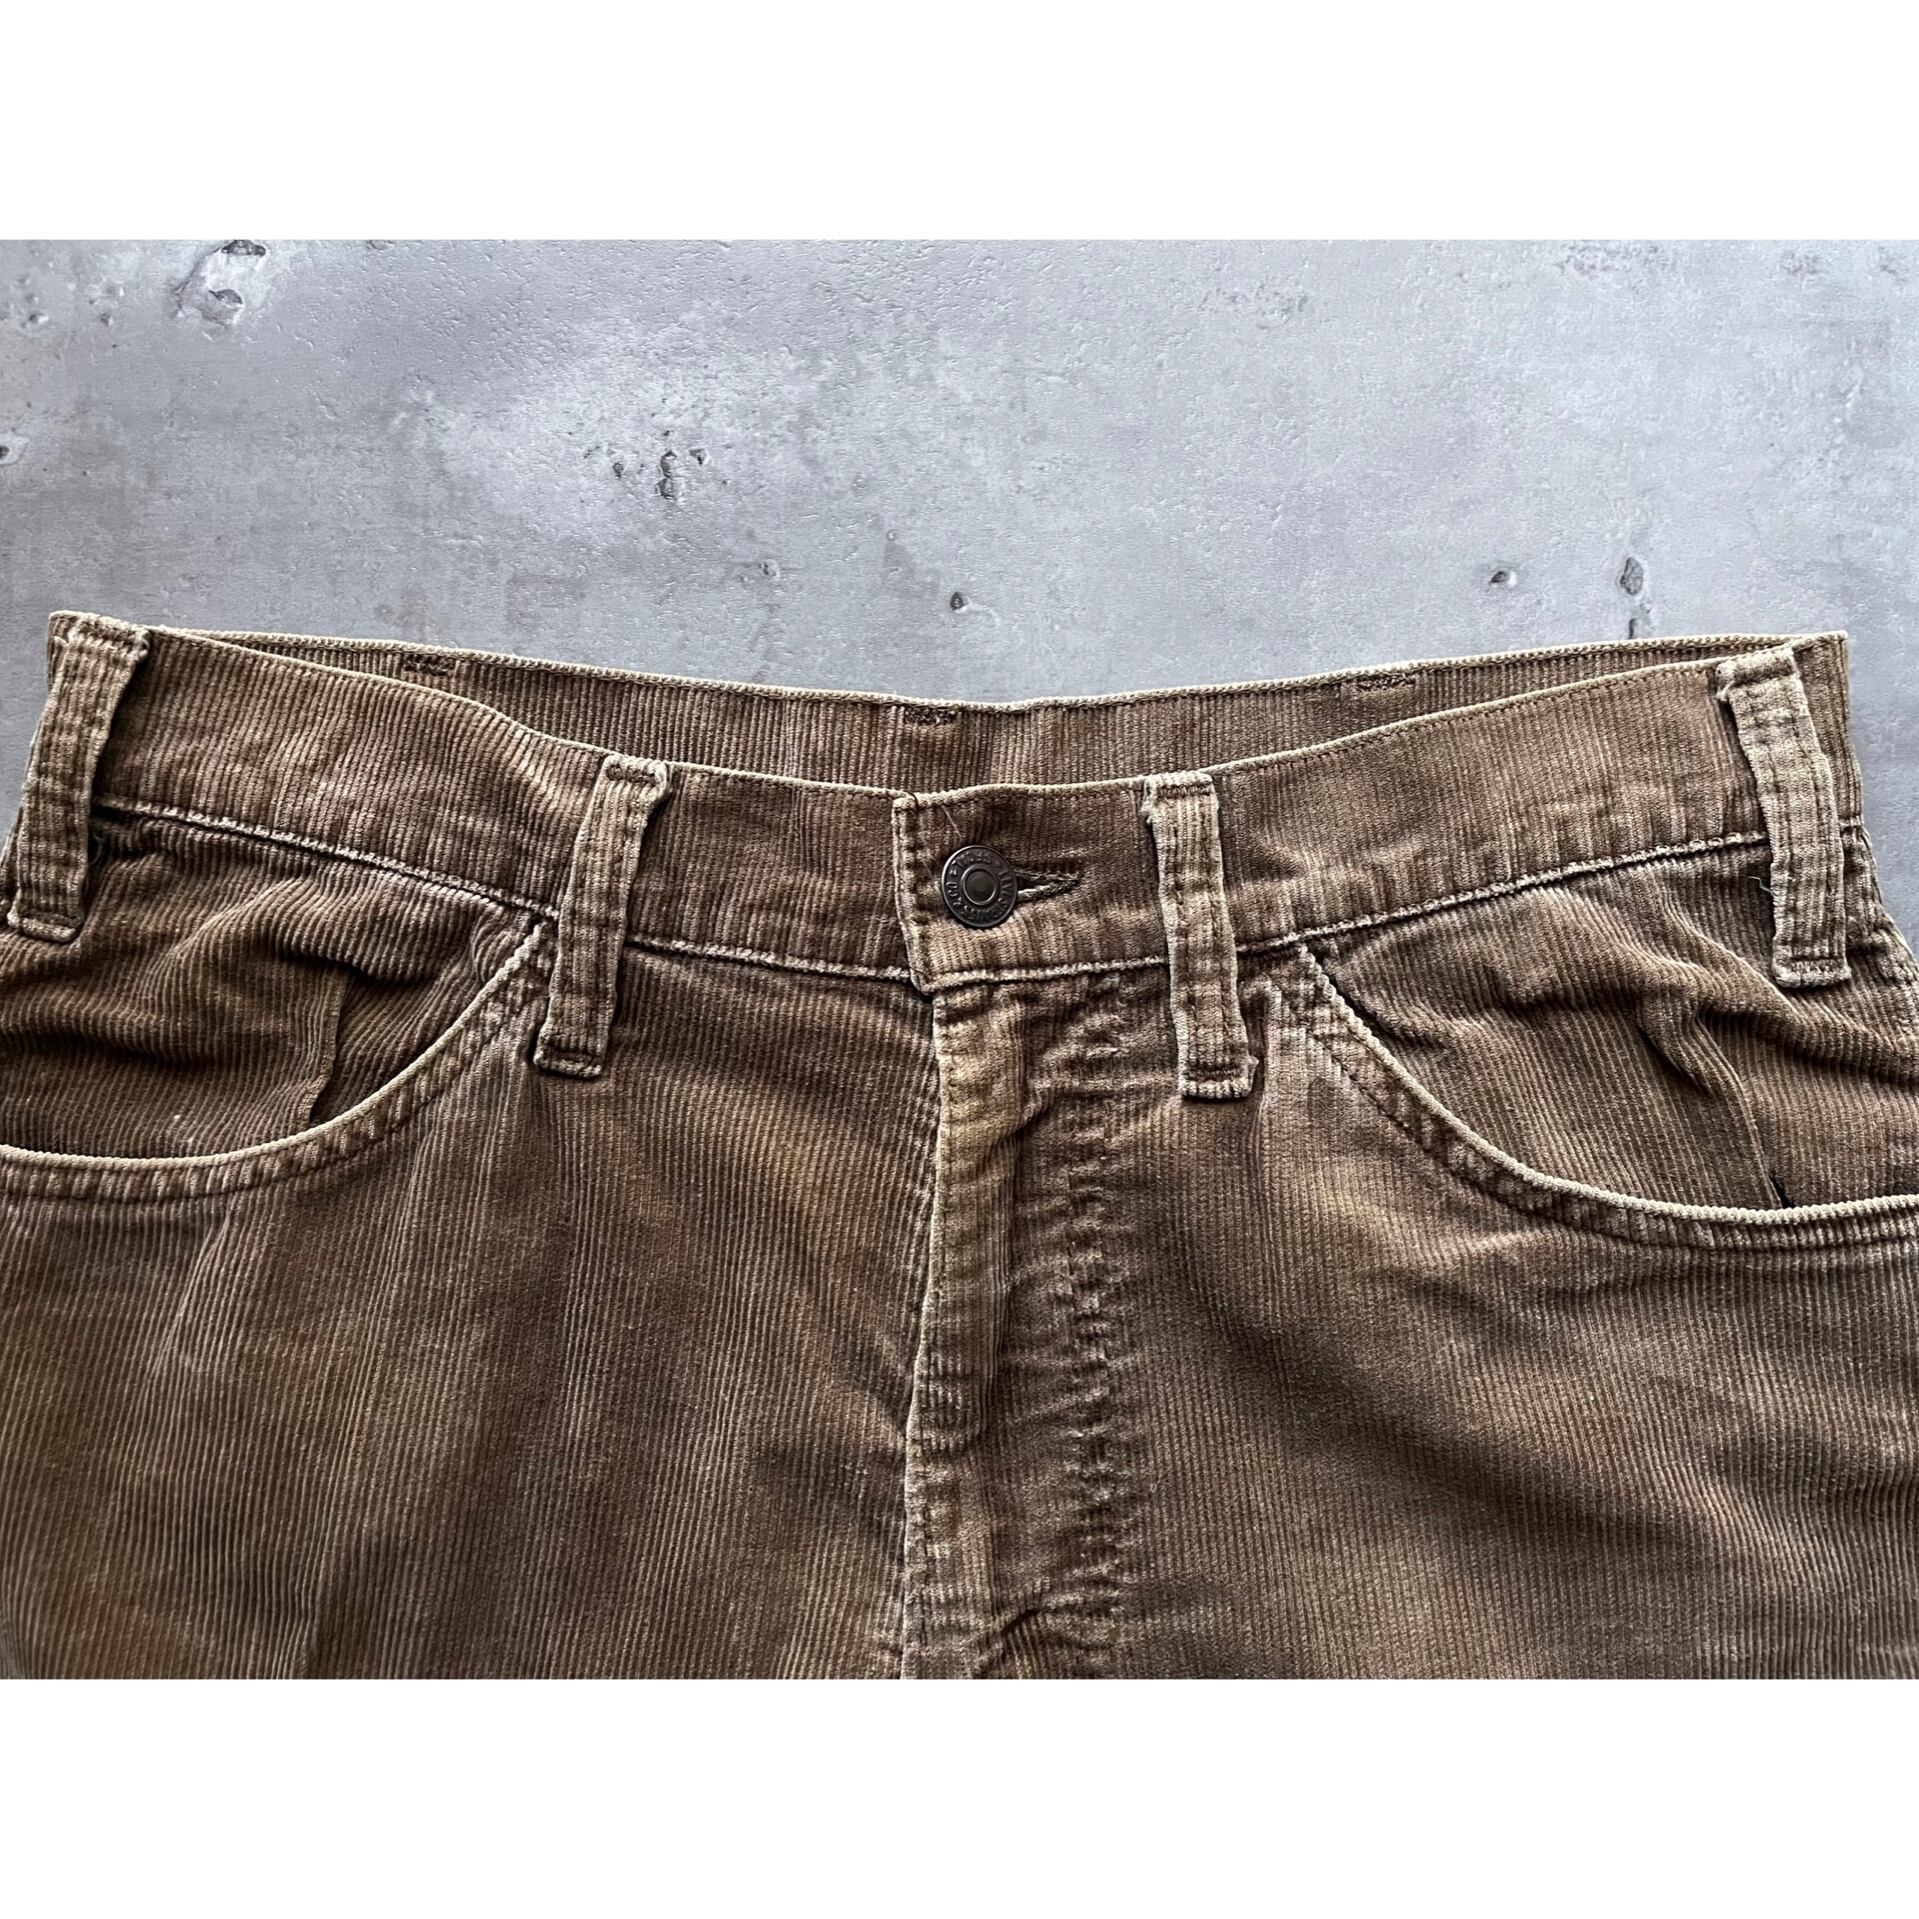 70s levi's corduroy flare pants brown bell-bottoms リーバイス コーデュロイパンツ フレアパンツ  ベルボトム ブラウン